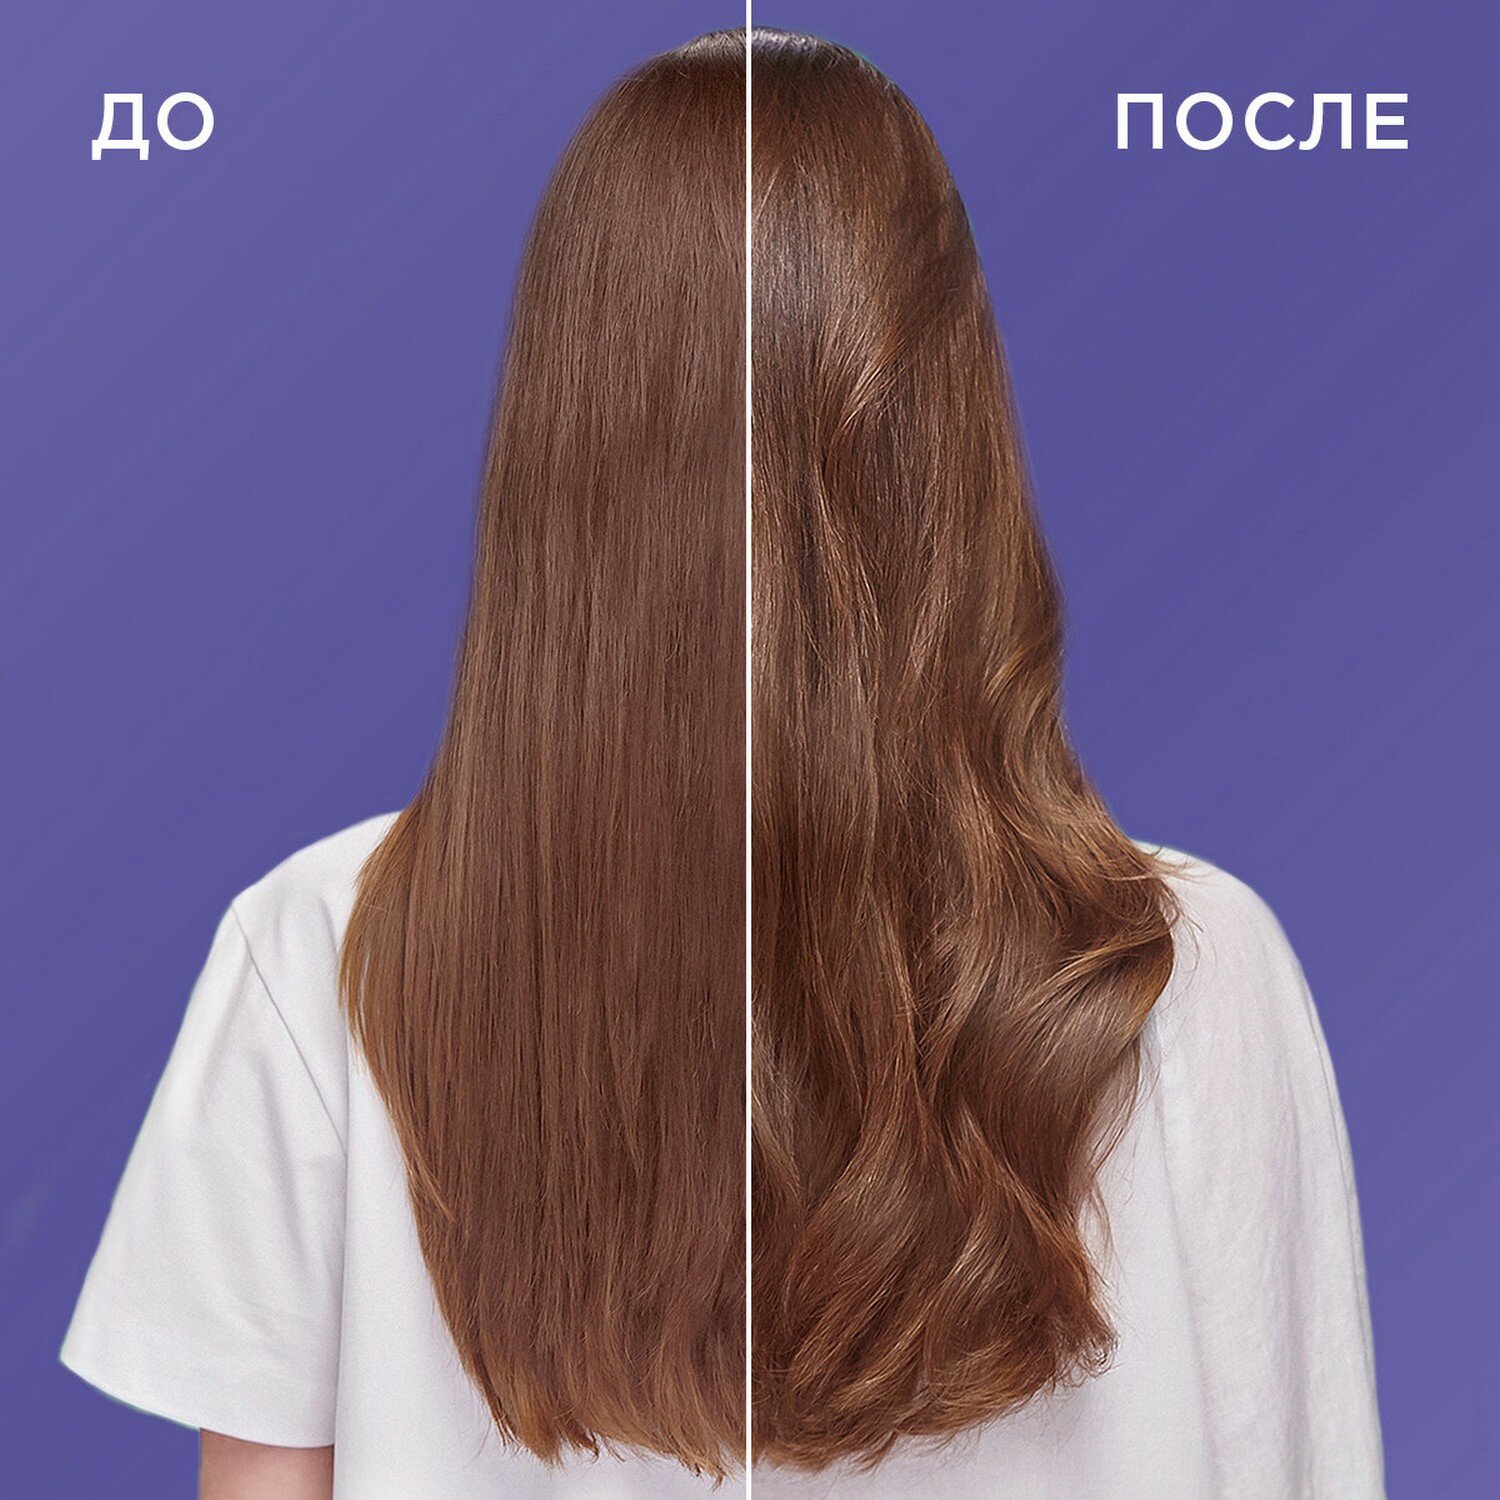 Шаума Шампунь для тонких, лишенных объема волос женский Воздушный объем, 370 мл